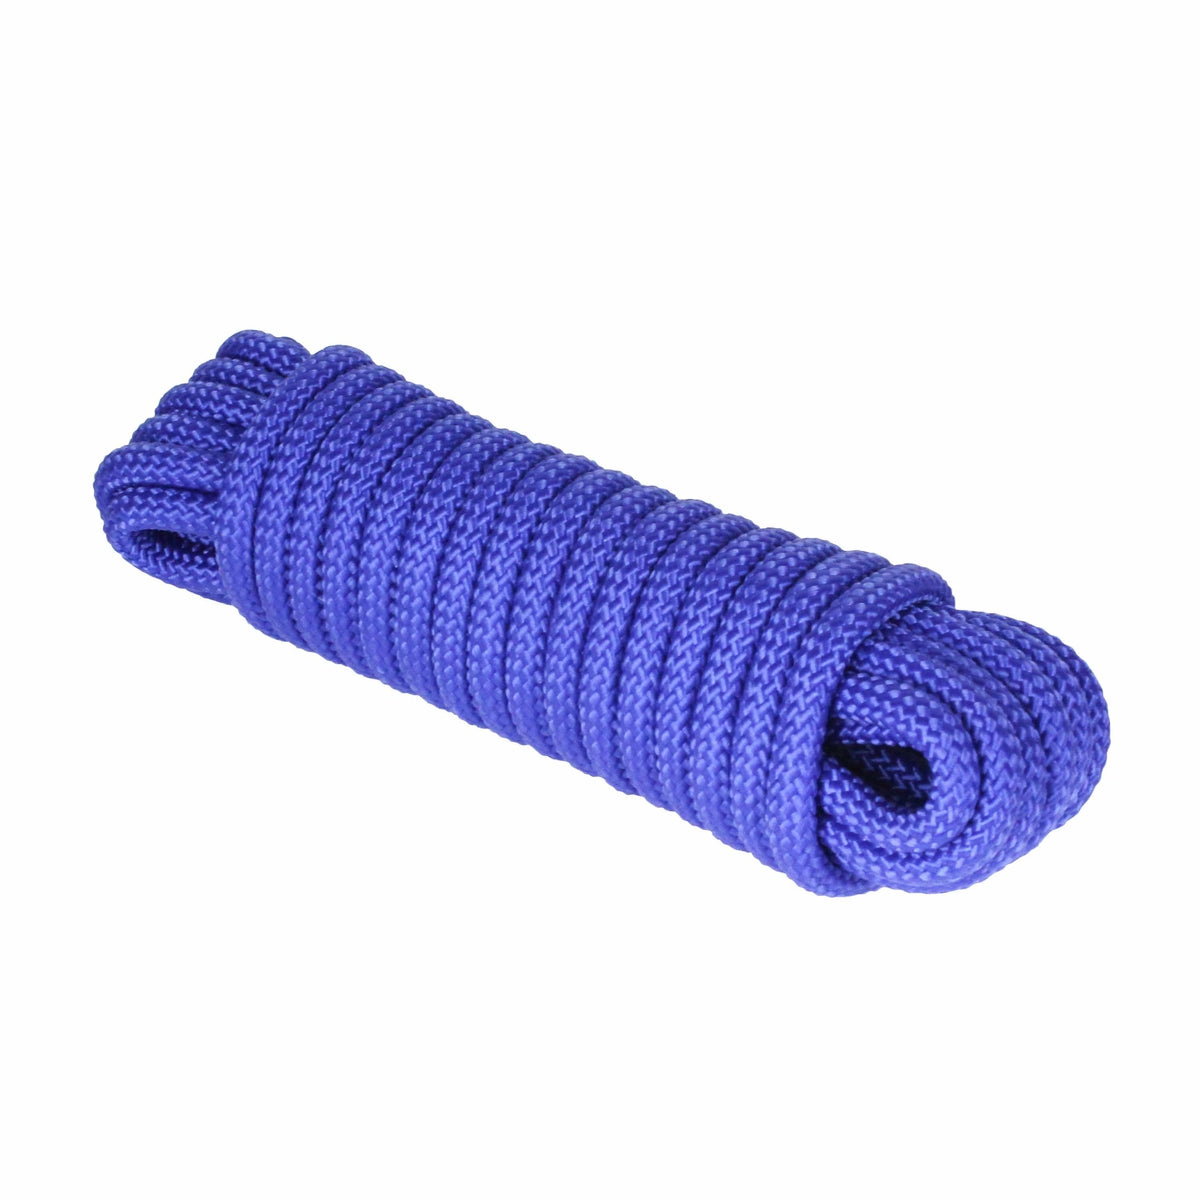 Extreme Max Diamond Braid Utility Rope 1/4" 50' Blue #3008.0268